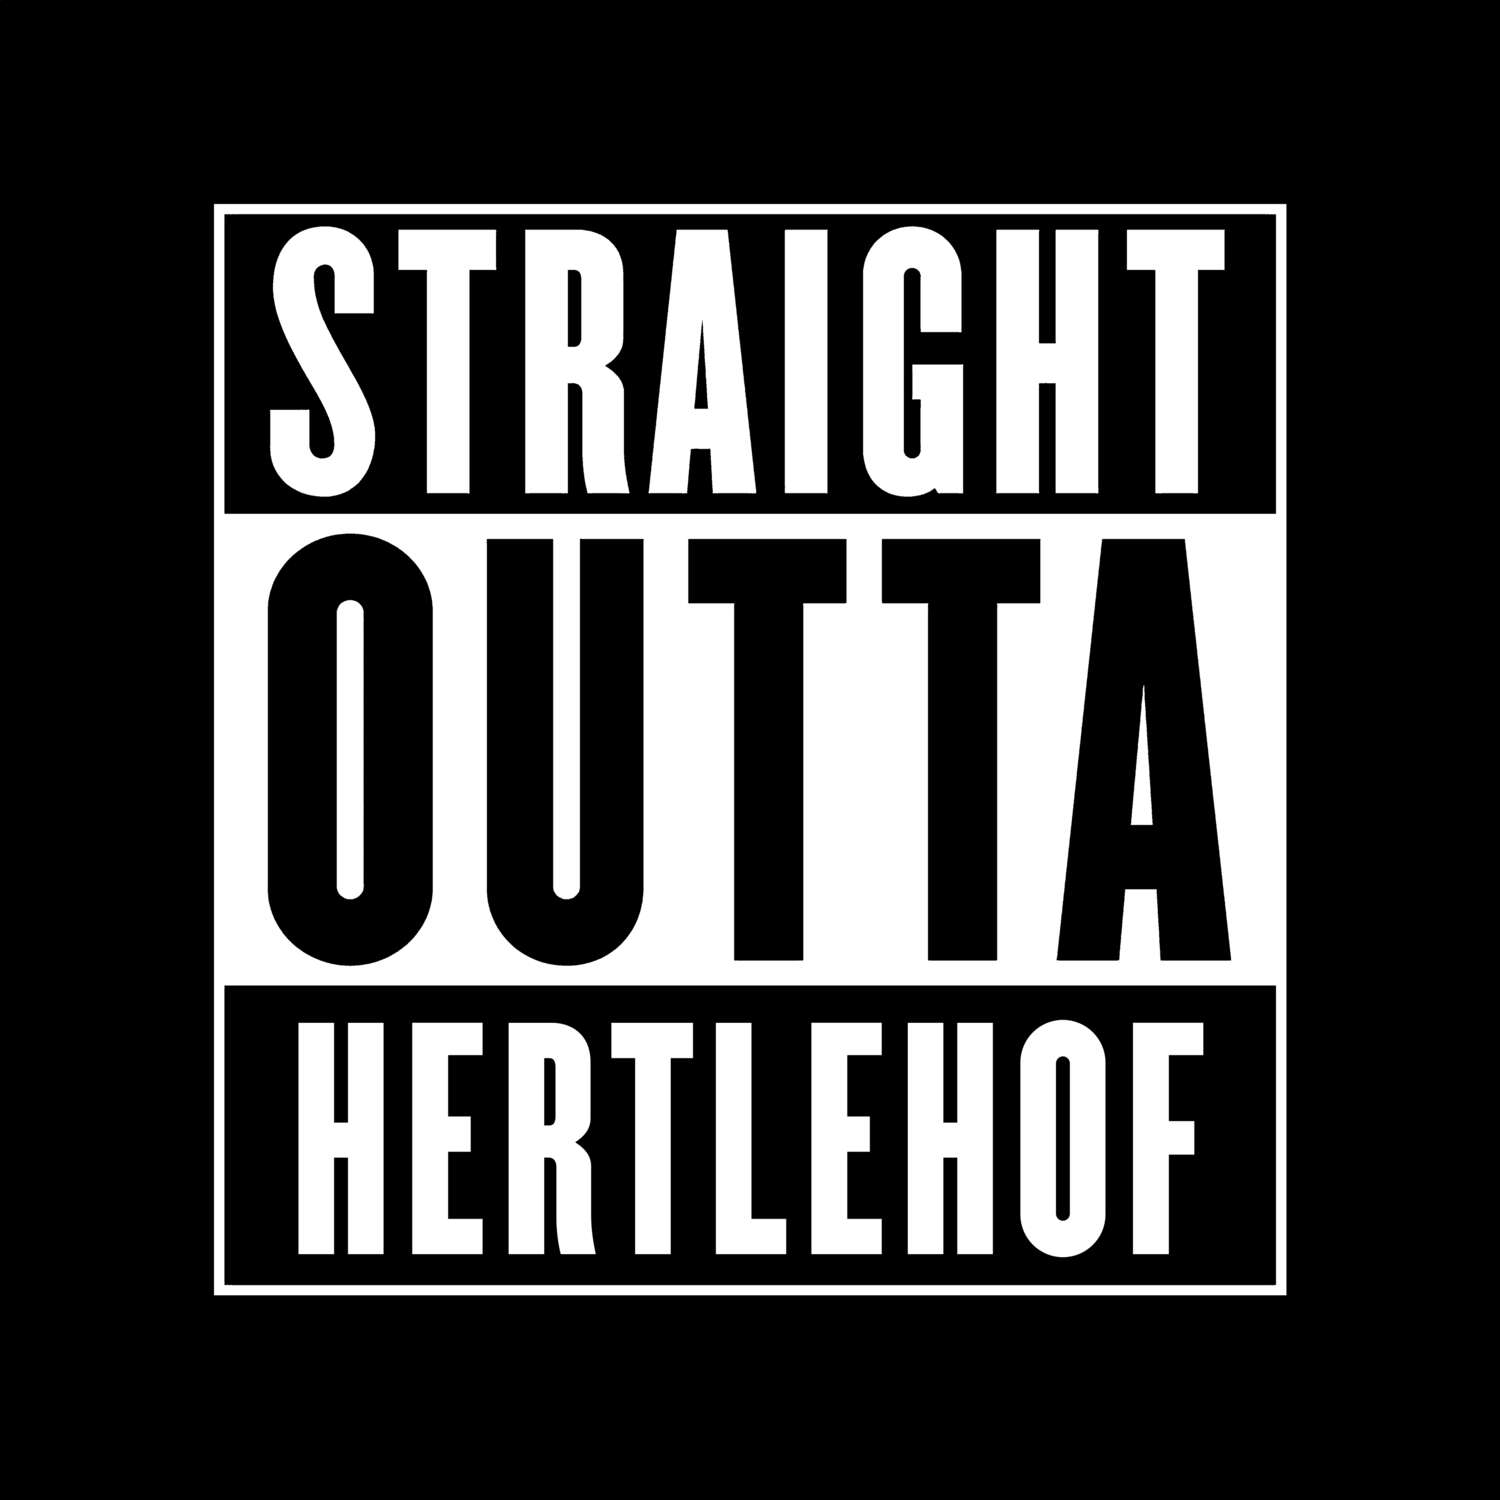 Hertlehof T-Shirt »Straight Outta«